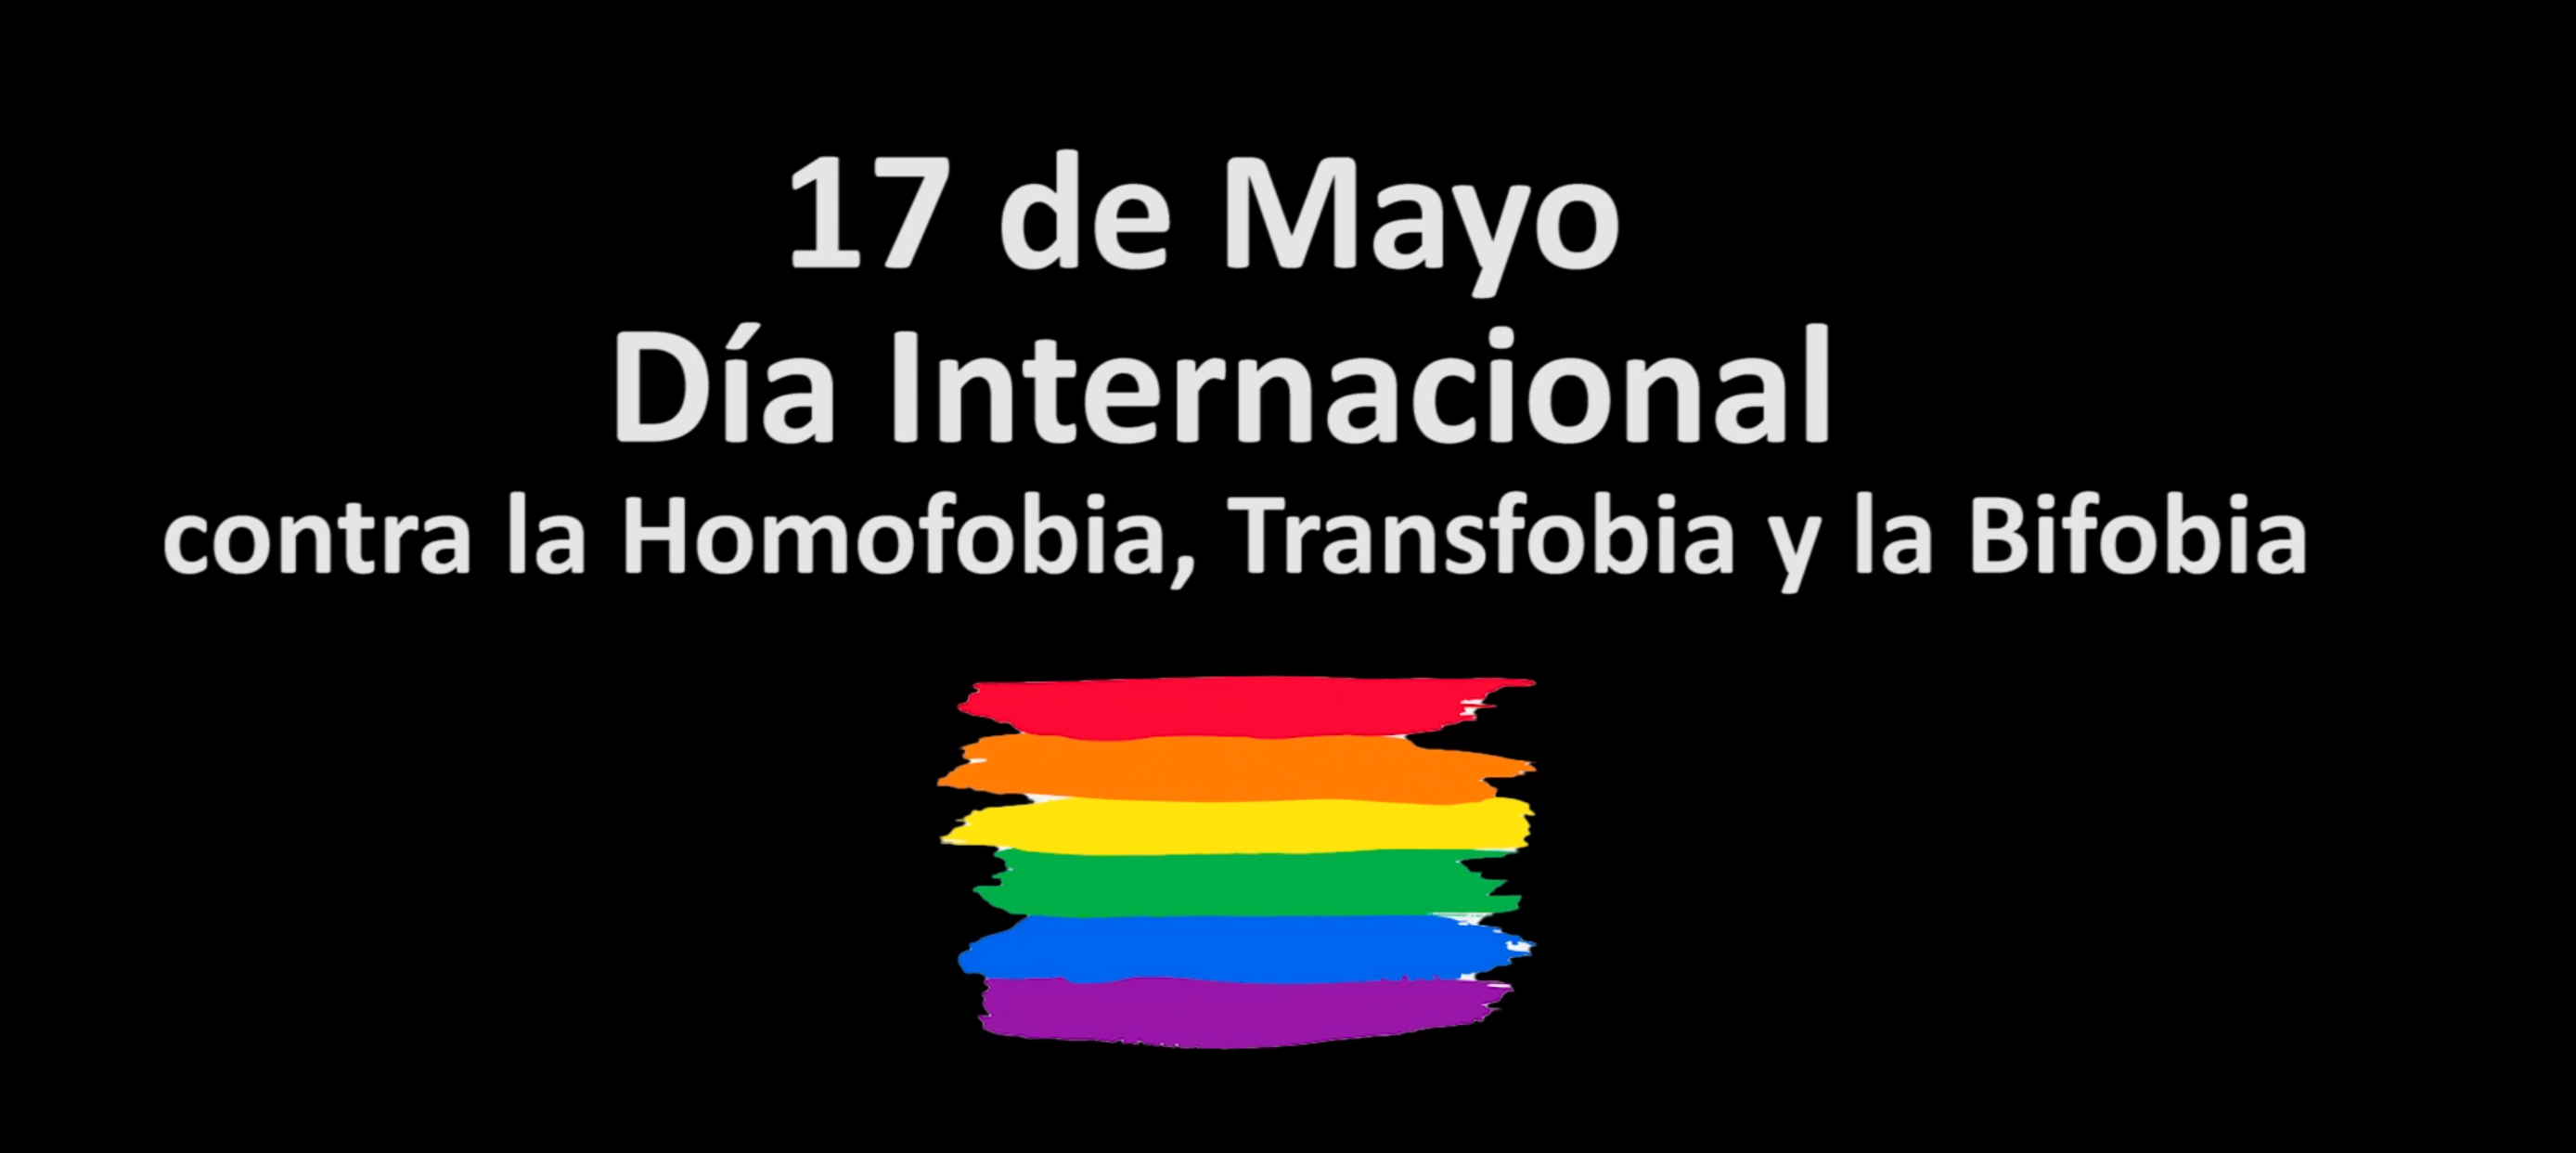 Imagen de la noticia: 17 de MAYO DÍA INTERNACIONAL CONTRA LA HOMOFOBIA, TRANSFOBIA Y LA BIFOBIA